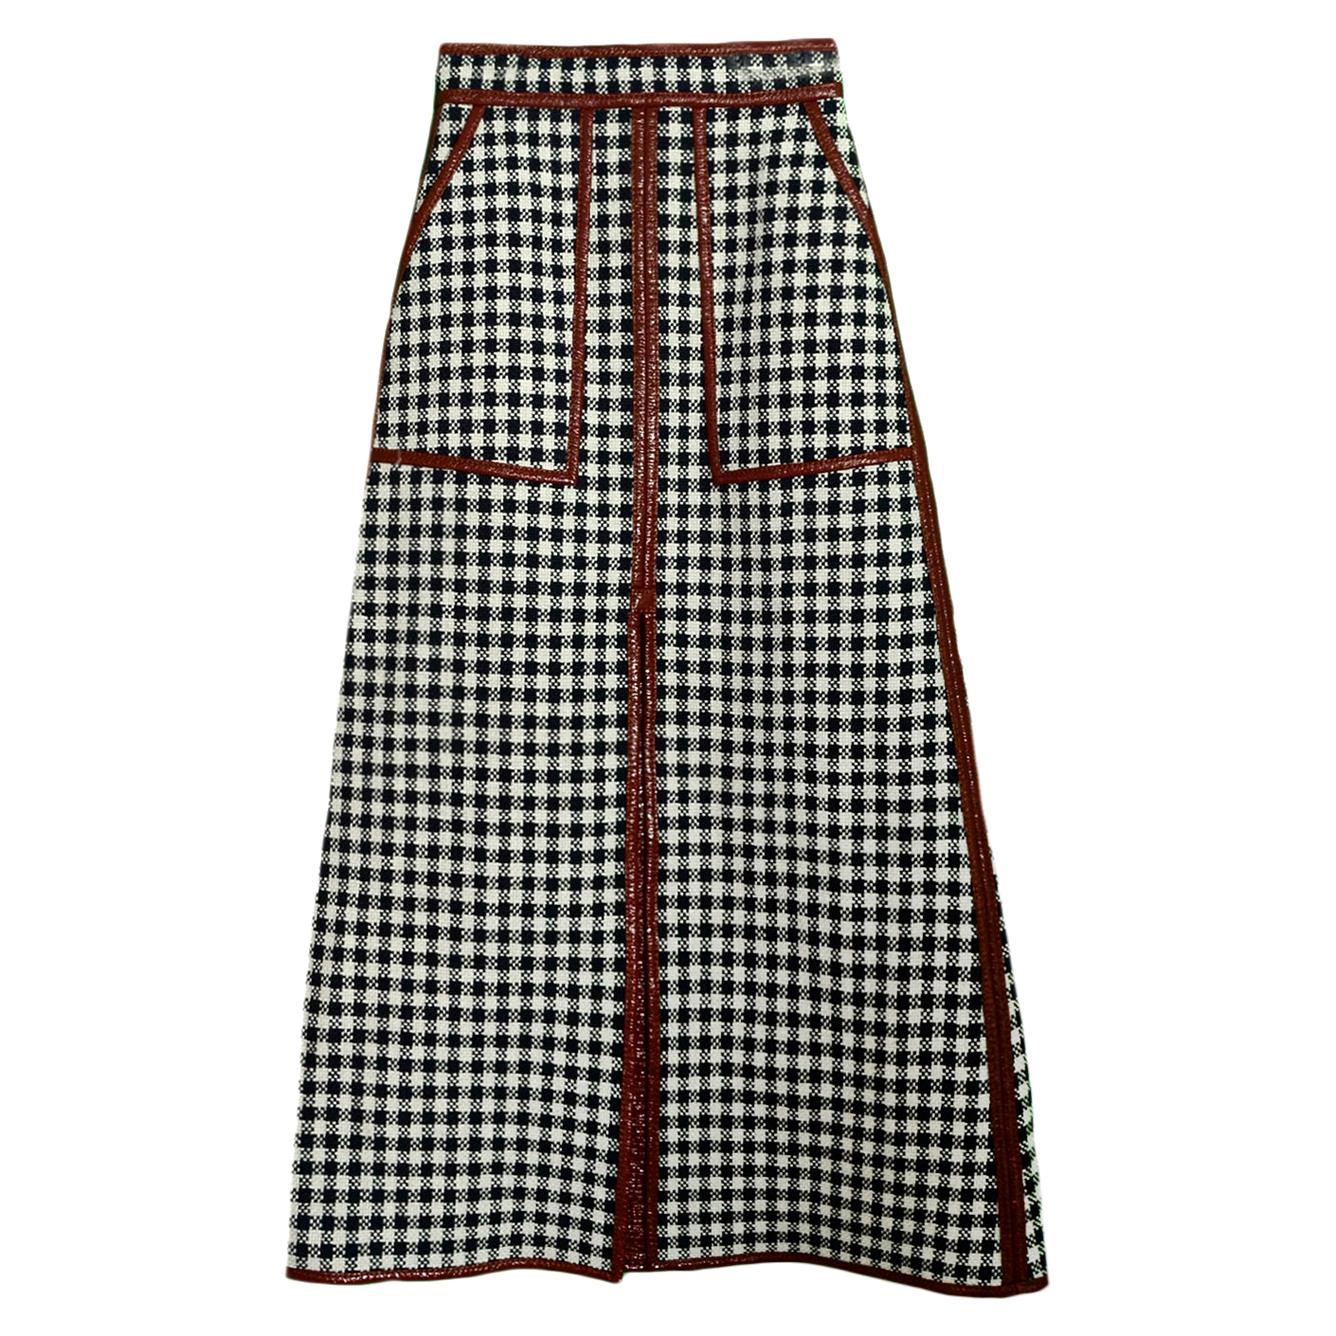 Martin Grant NEW A-Line Linen-Blend Skirt w. Patent Trim sz FR34